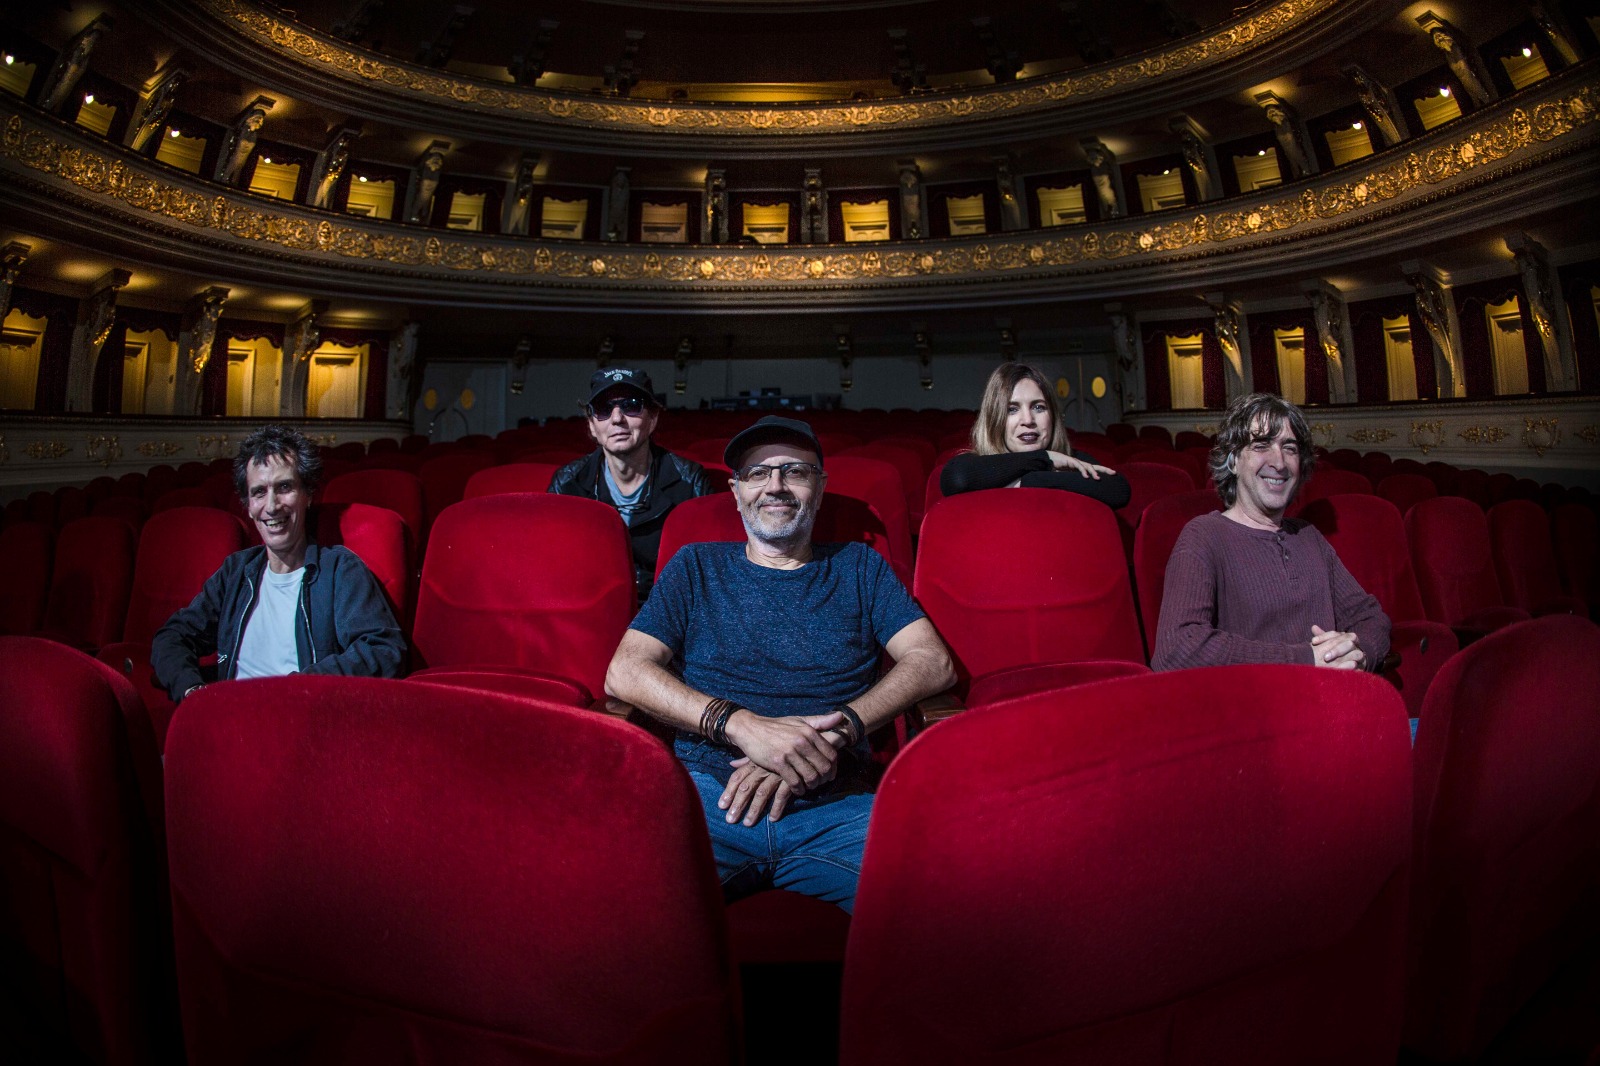 Teatro Municipal de Lima: Mar de Copas prepara conciertos con motivo del 25º aniversario del disco Suna – Caretas